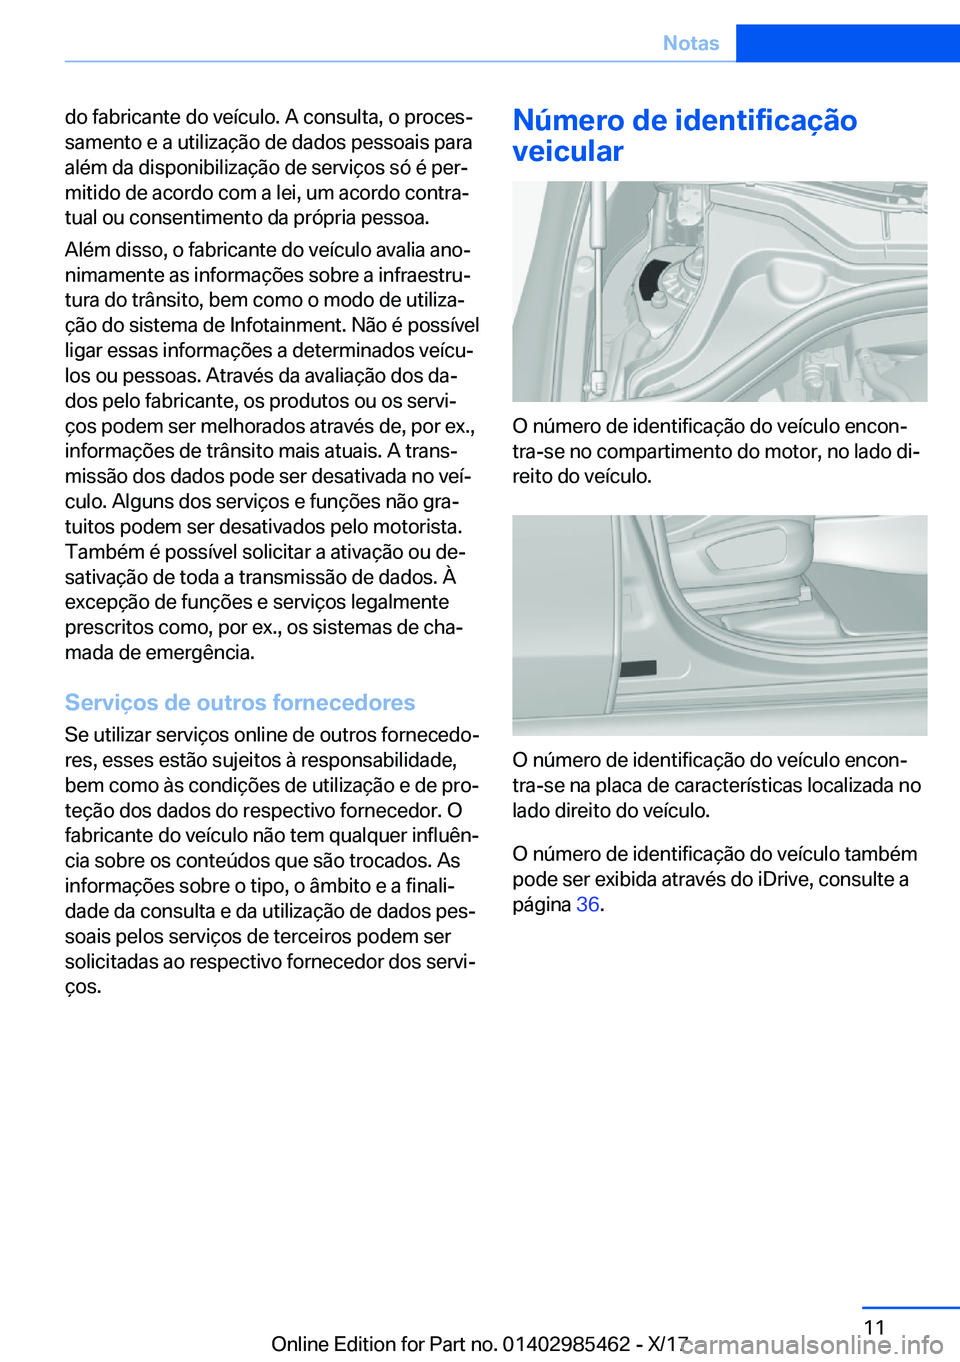 BMW X1 2018  Manual do condutor (in Portuguese) �d�o� �f�a�b�r�i�c�a�n�t�e� �d�o� �v�e�